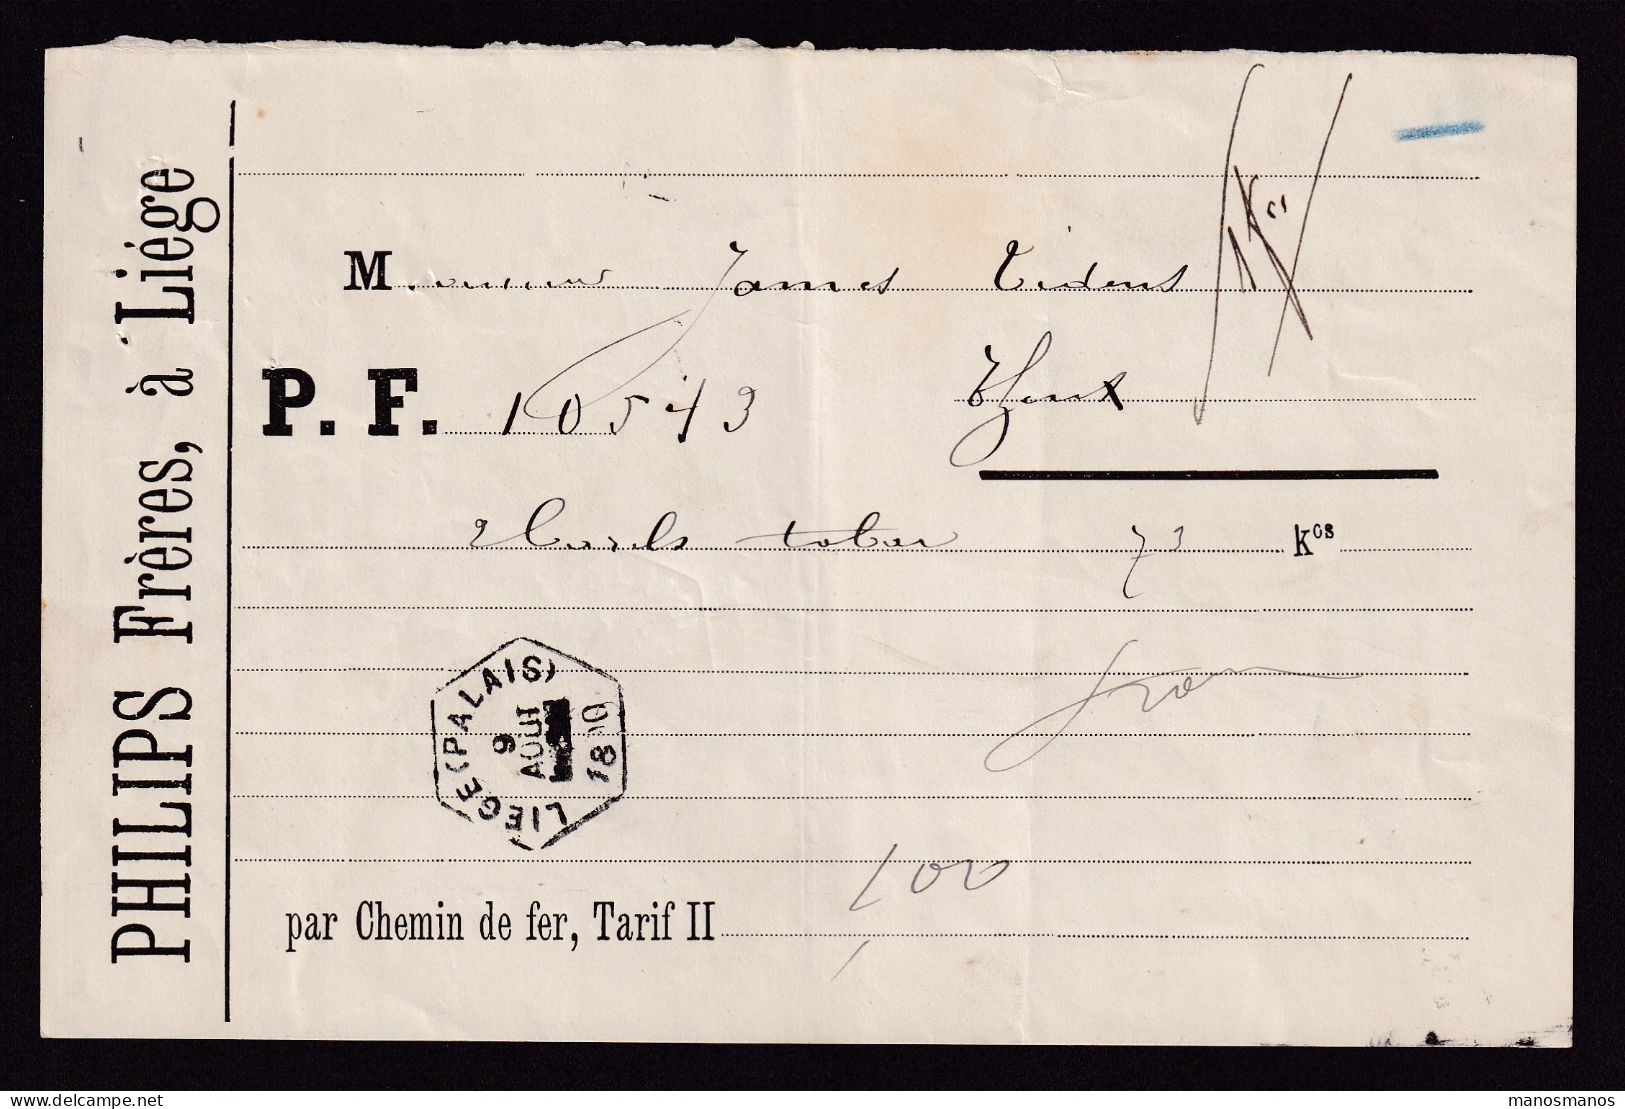 DDFF 820 -- BELGIUM - Lettre De Voiture Hexagonal Gare De LIEGE PALAIS 1890 à THEUX / Entete Philips Frères (TABAC) - Tabac